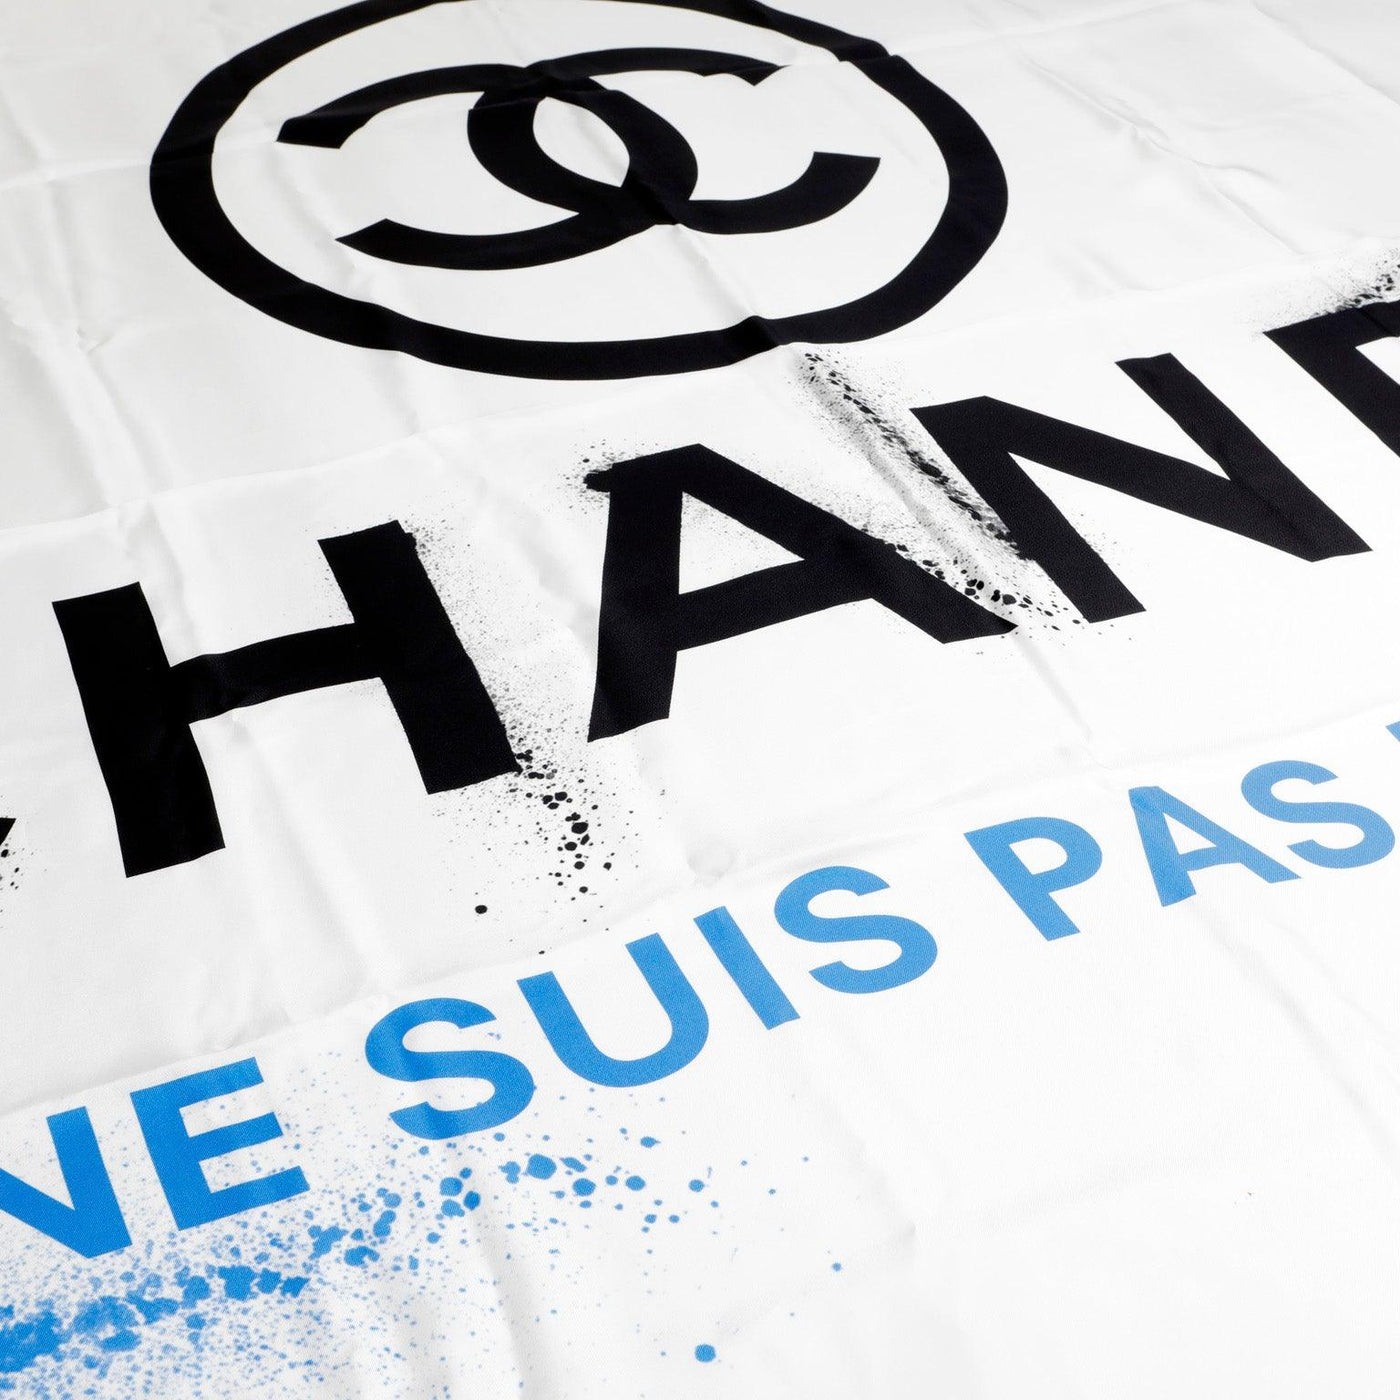 Chanel White Silk Je Ne Suis Pas En Solde Scarf - Only Authentics